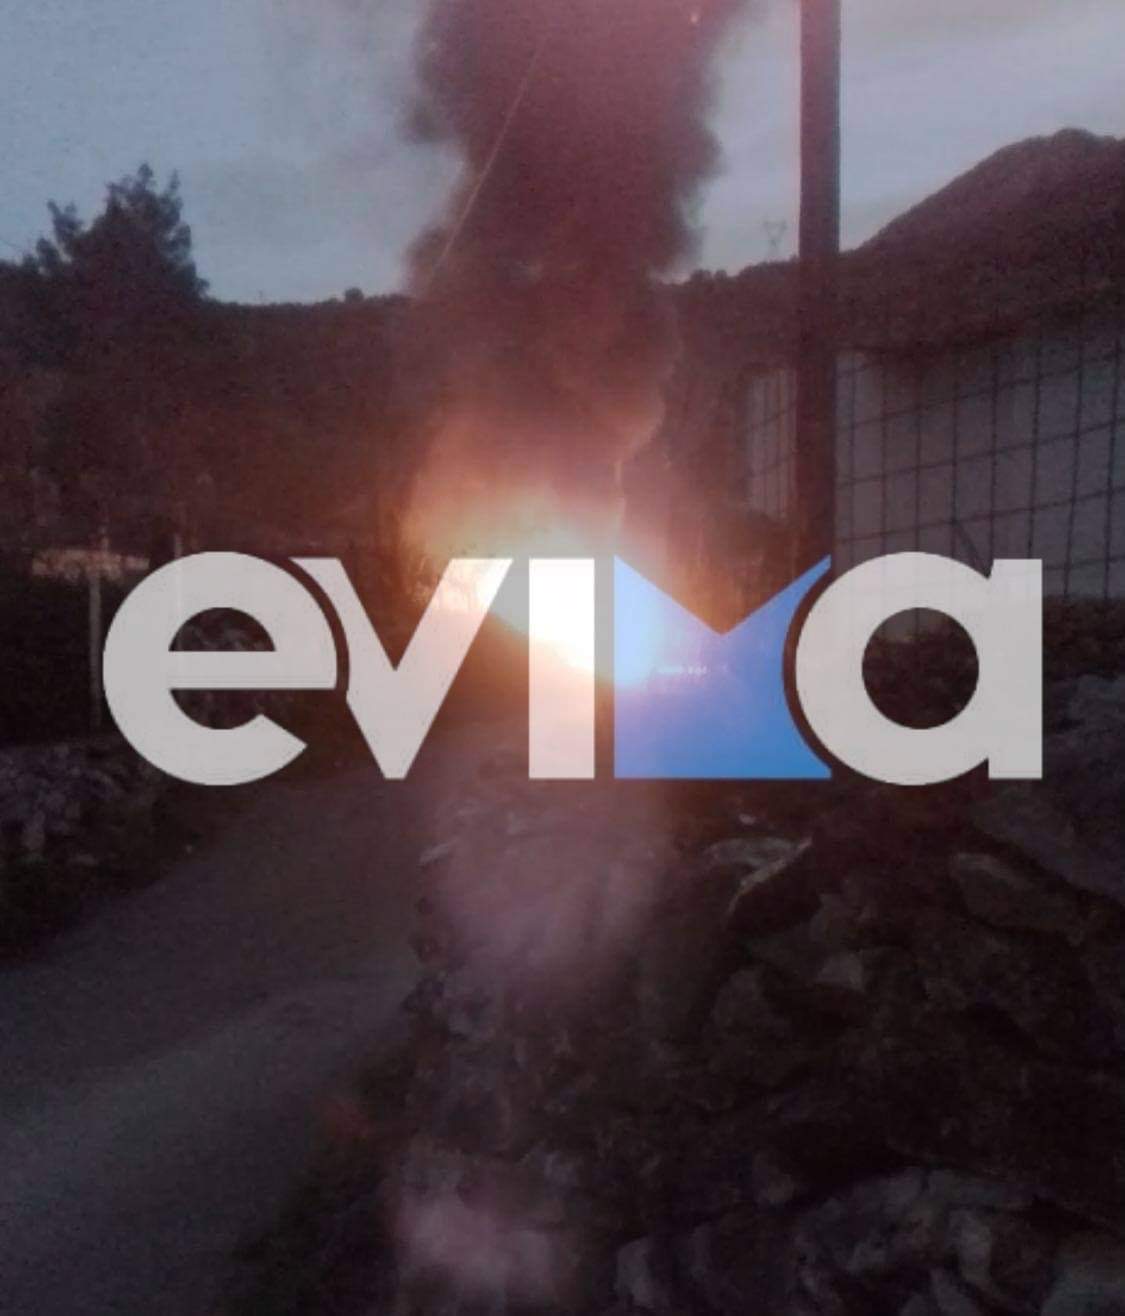 Εύβοια – Πράσινο: Κάηκε ολοσχερώς αυτοκίνητο στο κέντρο του χωριού – Βίντεο την ώρα που καιγόταν το ΙΧ δίπλα σε σπίτια